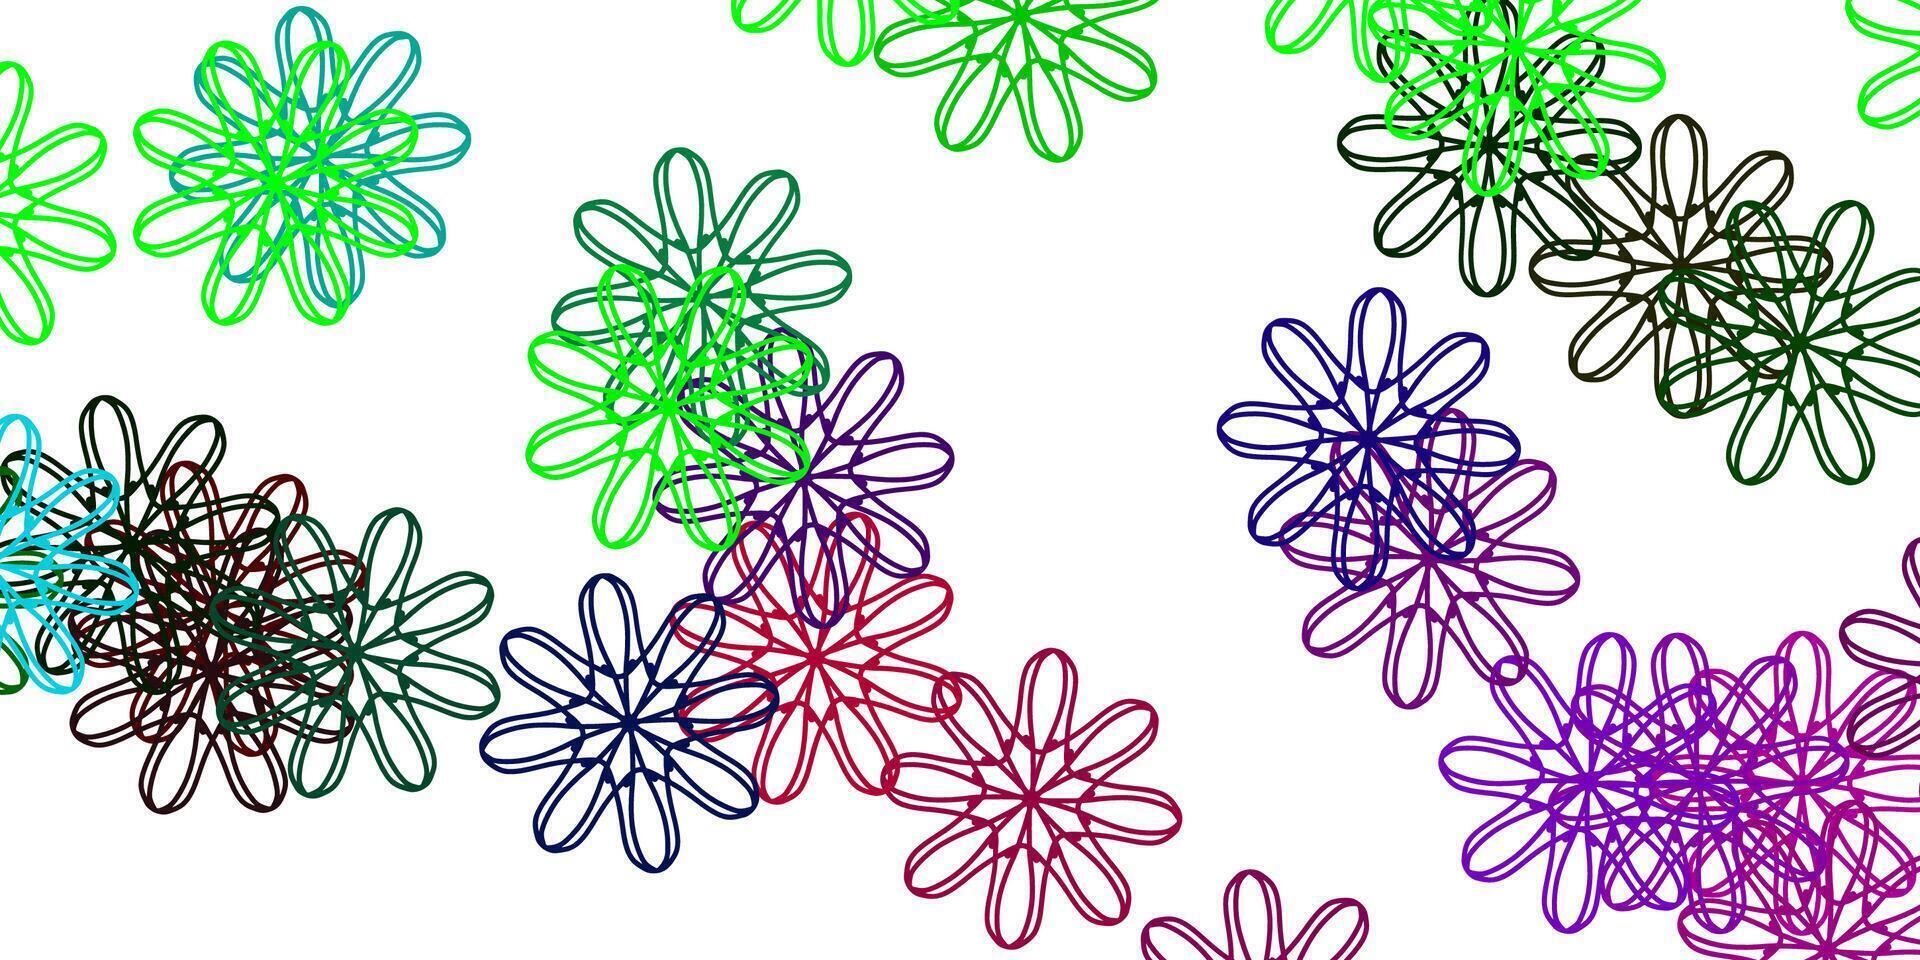 modello doodle vettoriale multicolore chiaro con fiori.